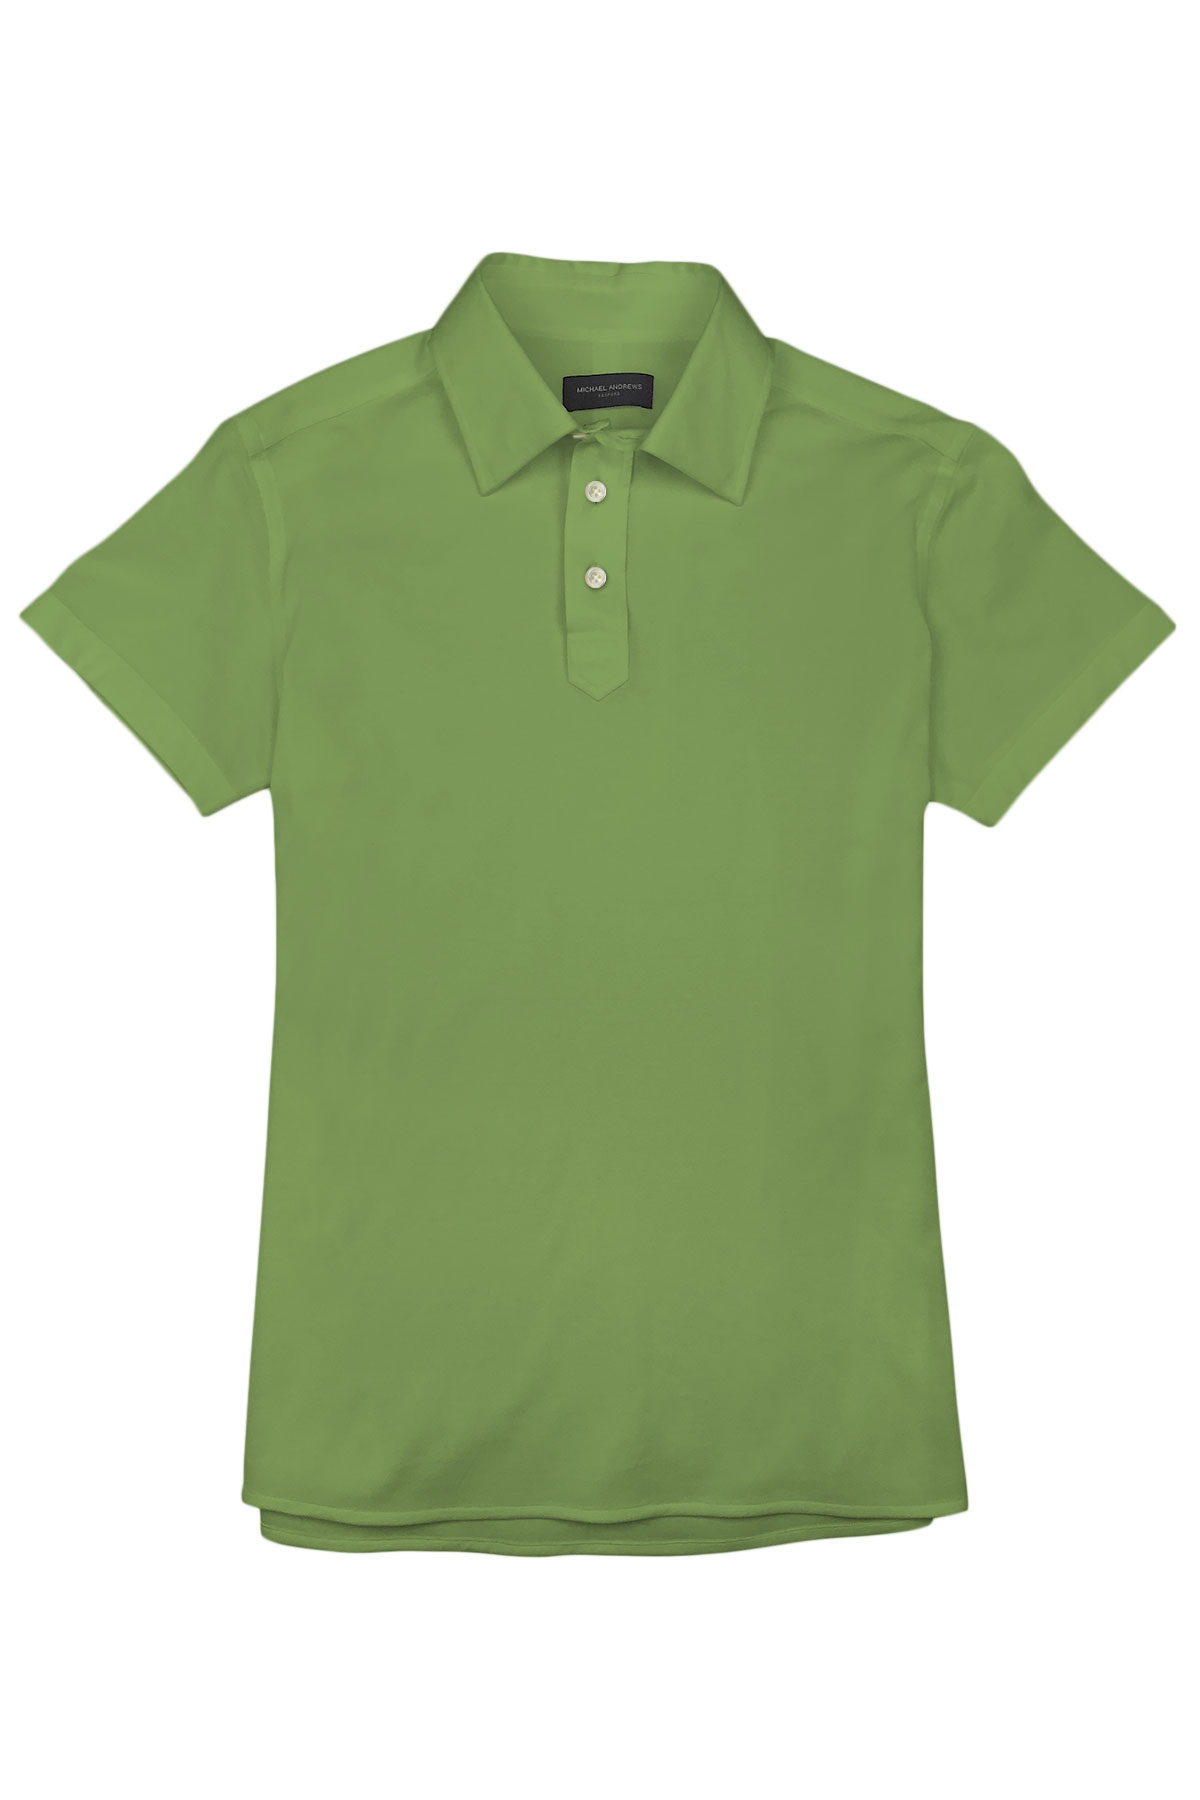 Light Fern Green Pique Polo Shirt